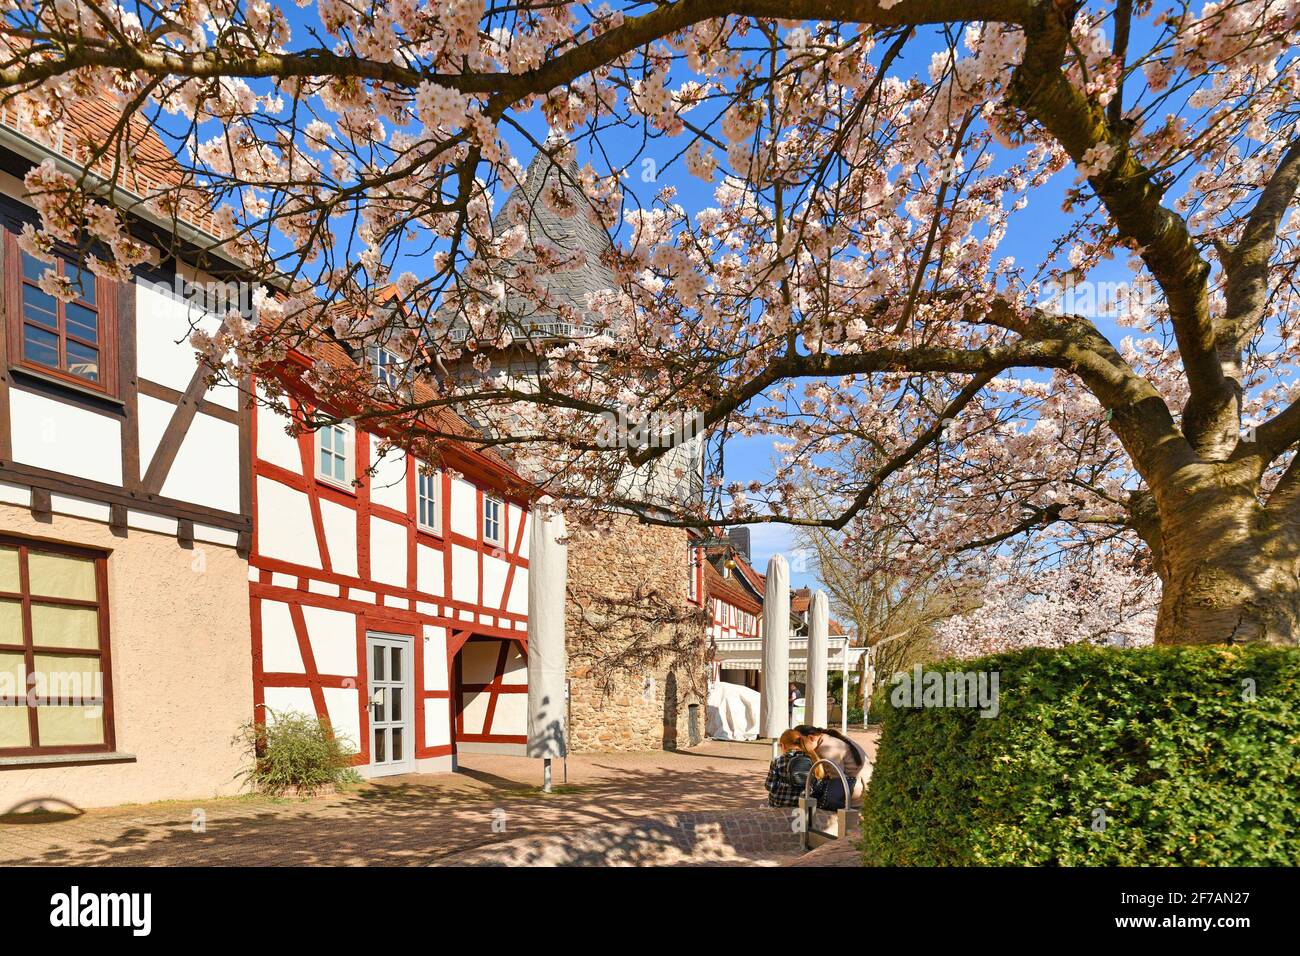 Hofheim, Deutschland - März 2020: Blühende japanische Kirschblütenbäume am alten historischen Platz mit Turm und Stadtmauer von Hofheim namens 'Platz am Unte Stockfoto